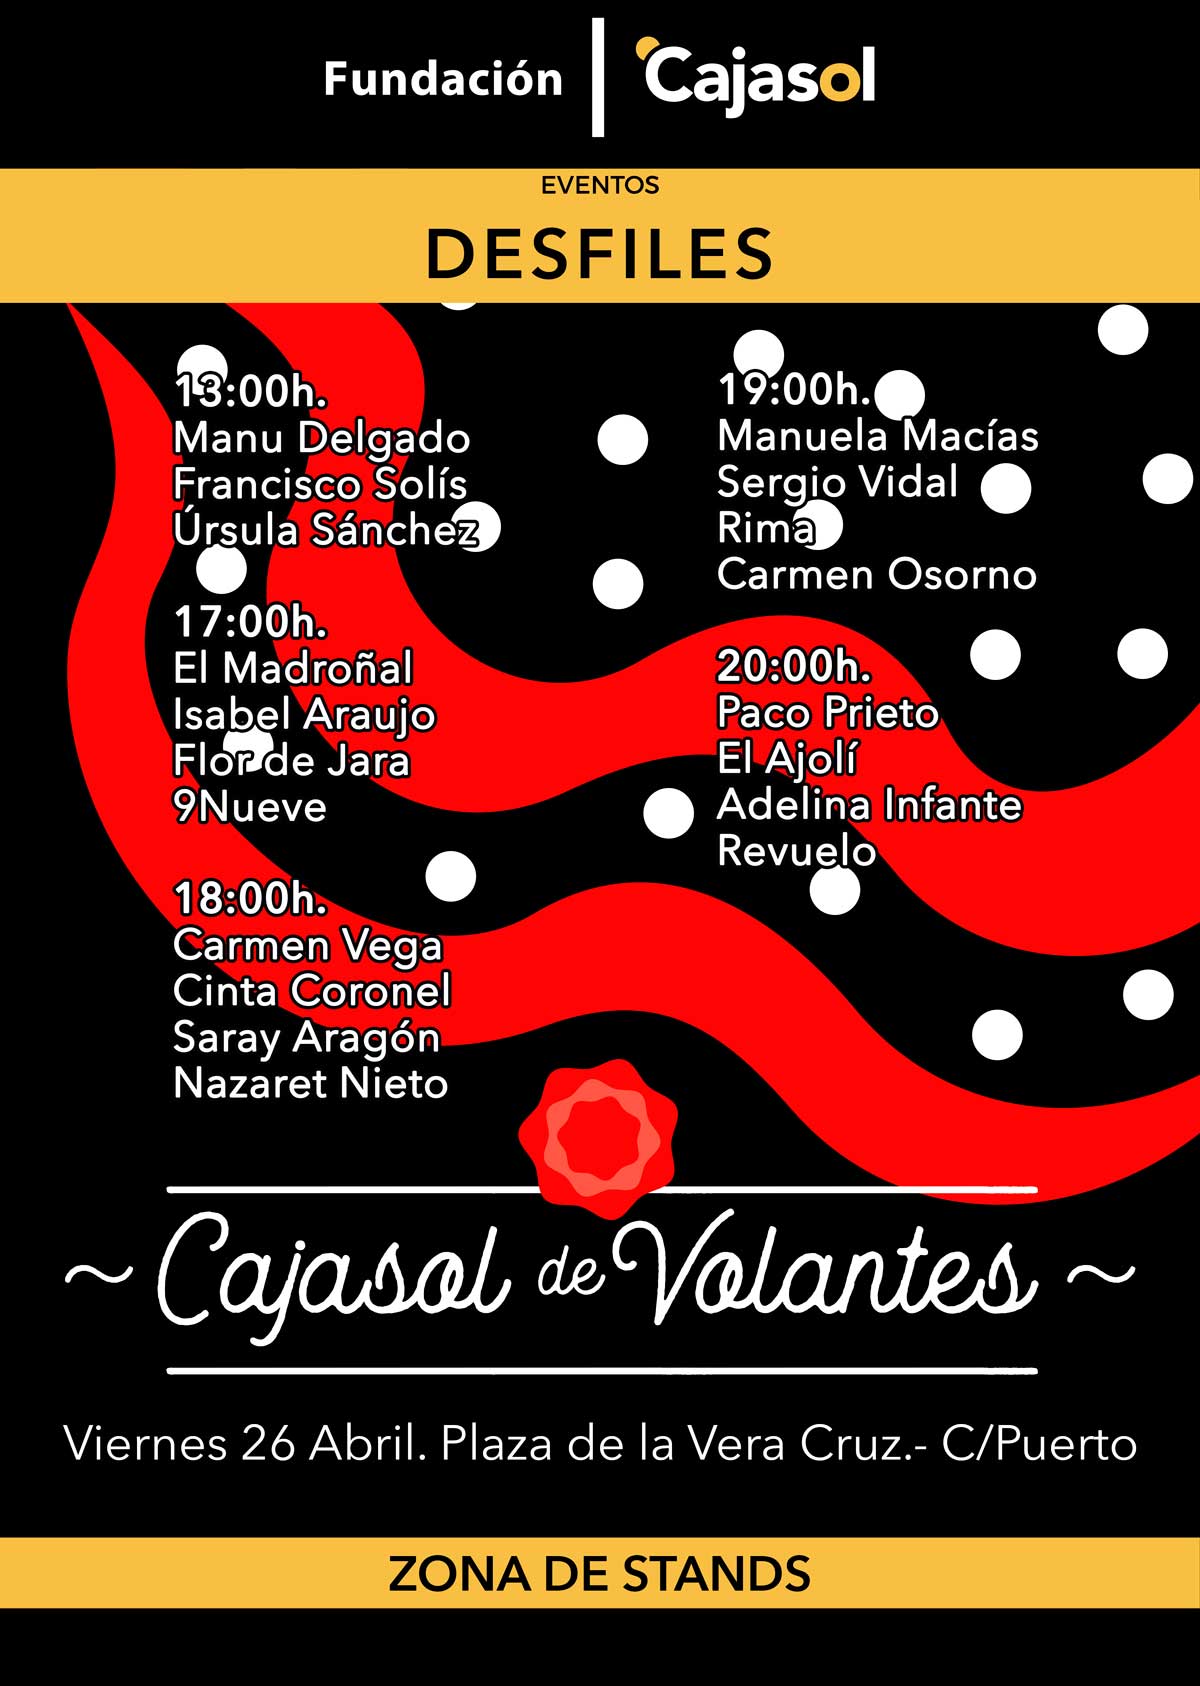 Cartel de los Desfiles de Cajasol de Volantes 2019 en Huelva